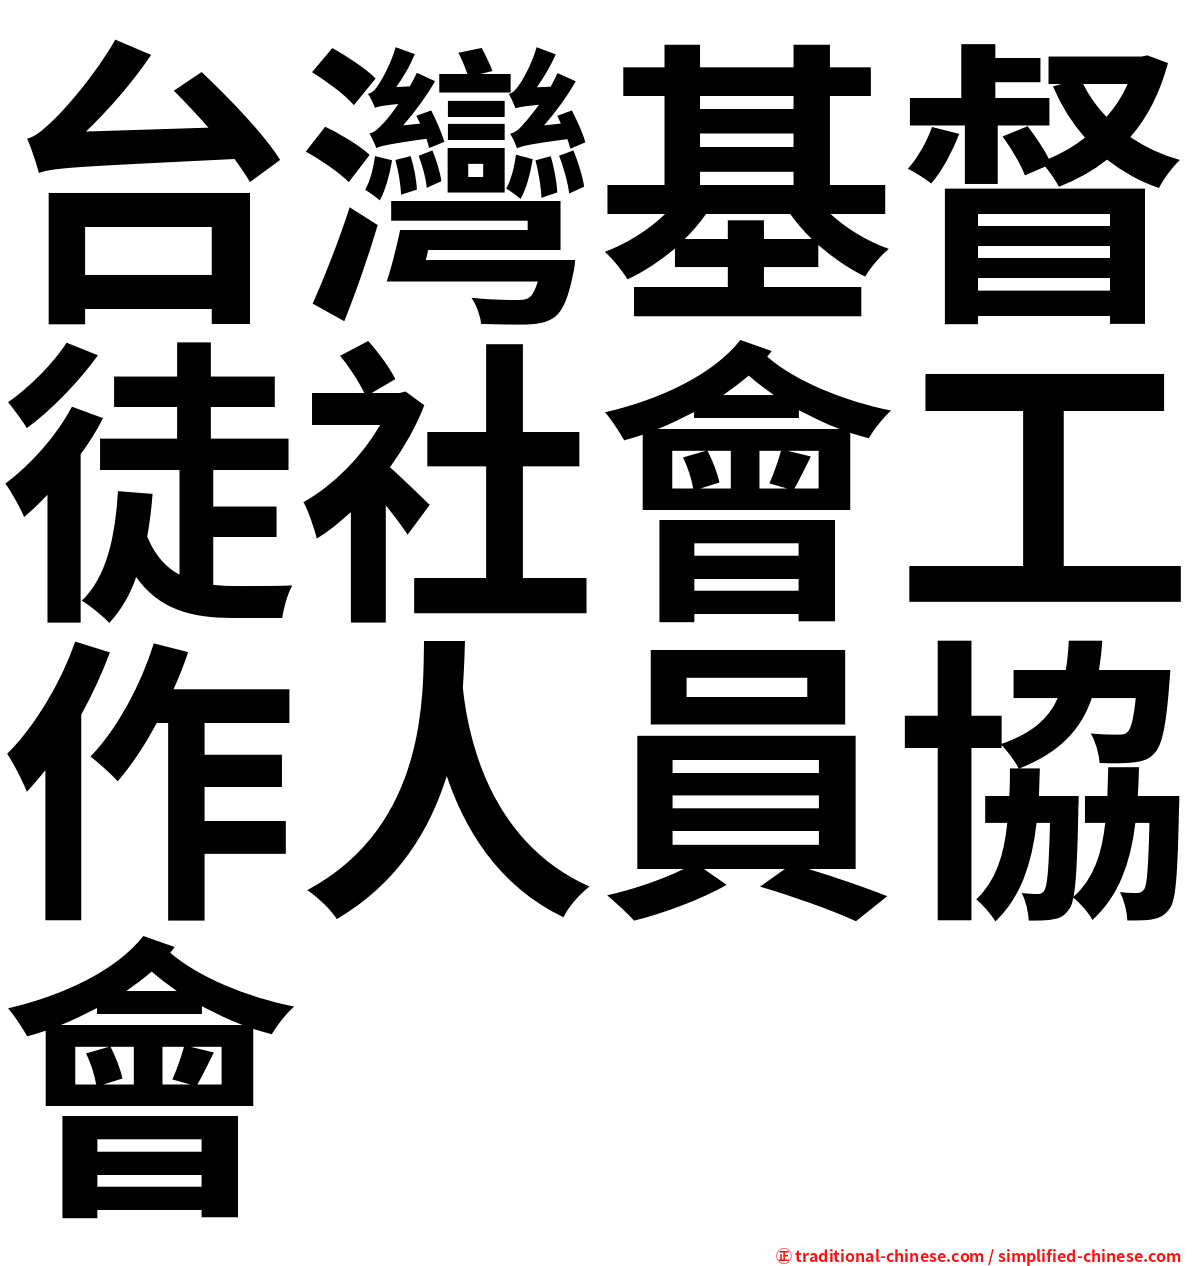 台灣基督徒社會工作人員協會